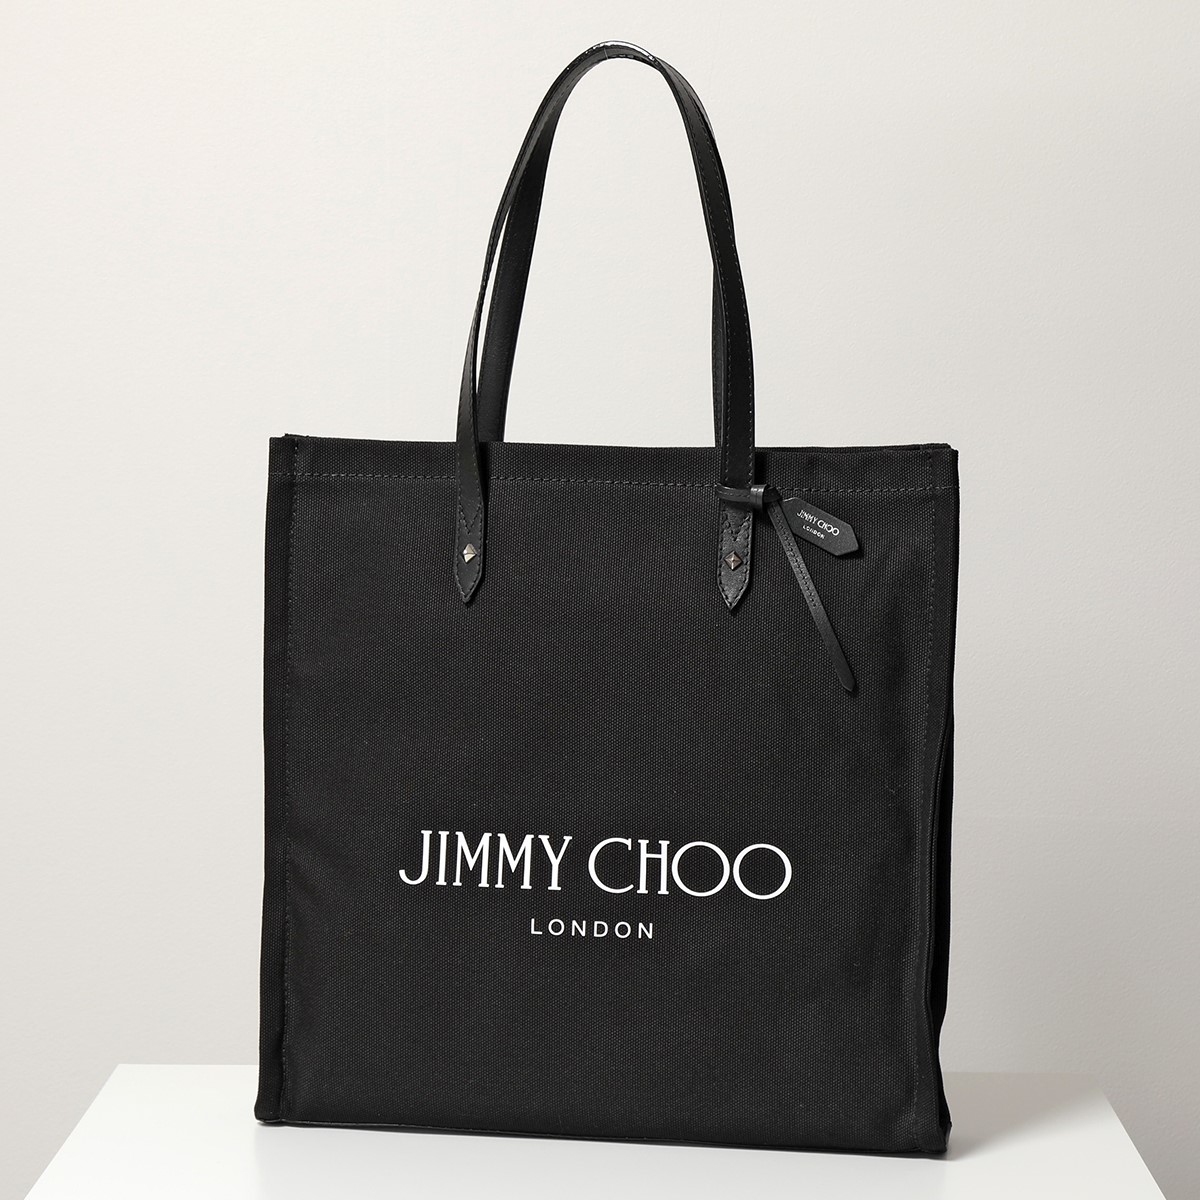 Jimmy Choo ジミーチュウ トートバッグ LOGO TOTE FFQ メンズ キャンバス ショッピングバッグ 鞄 BLACK/BLACK |  インポートセレクト musee